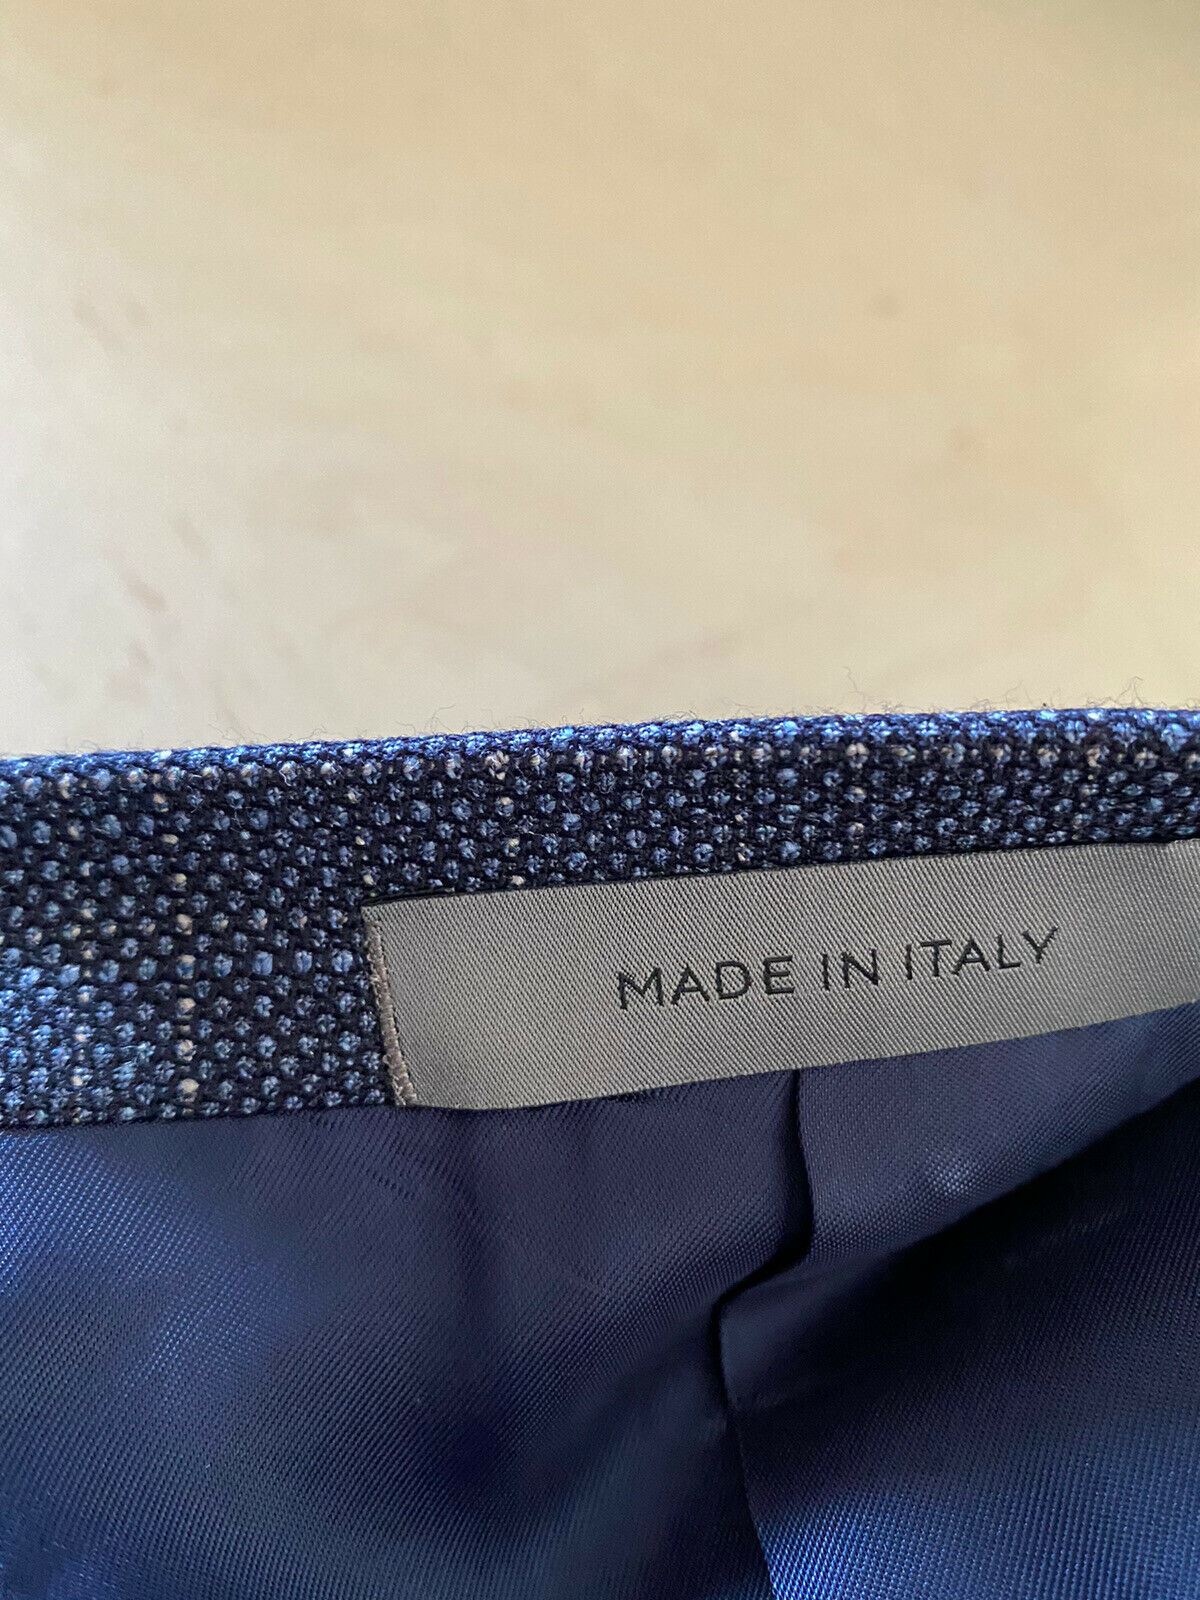 NWT $1695 Corneliani Men’s Sport Coat Jacket Blazer Blue 44R US ( 54R Eu ) Italy